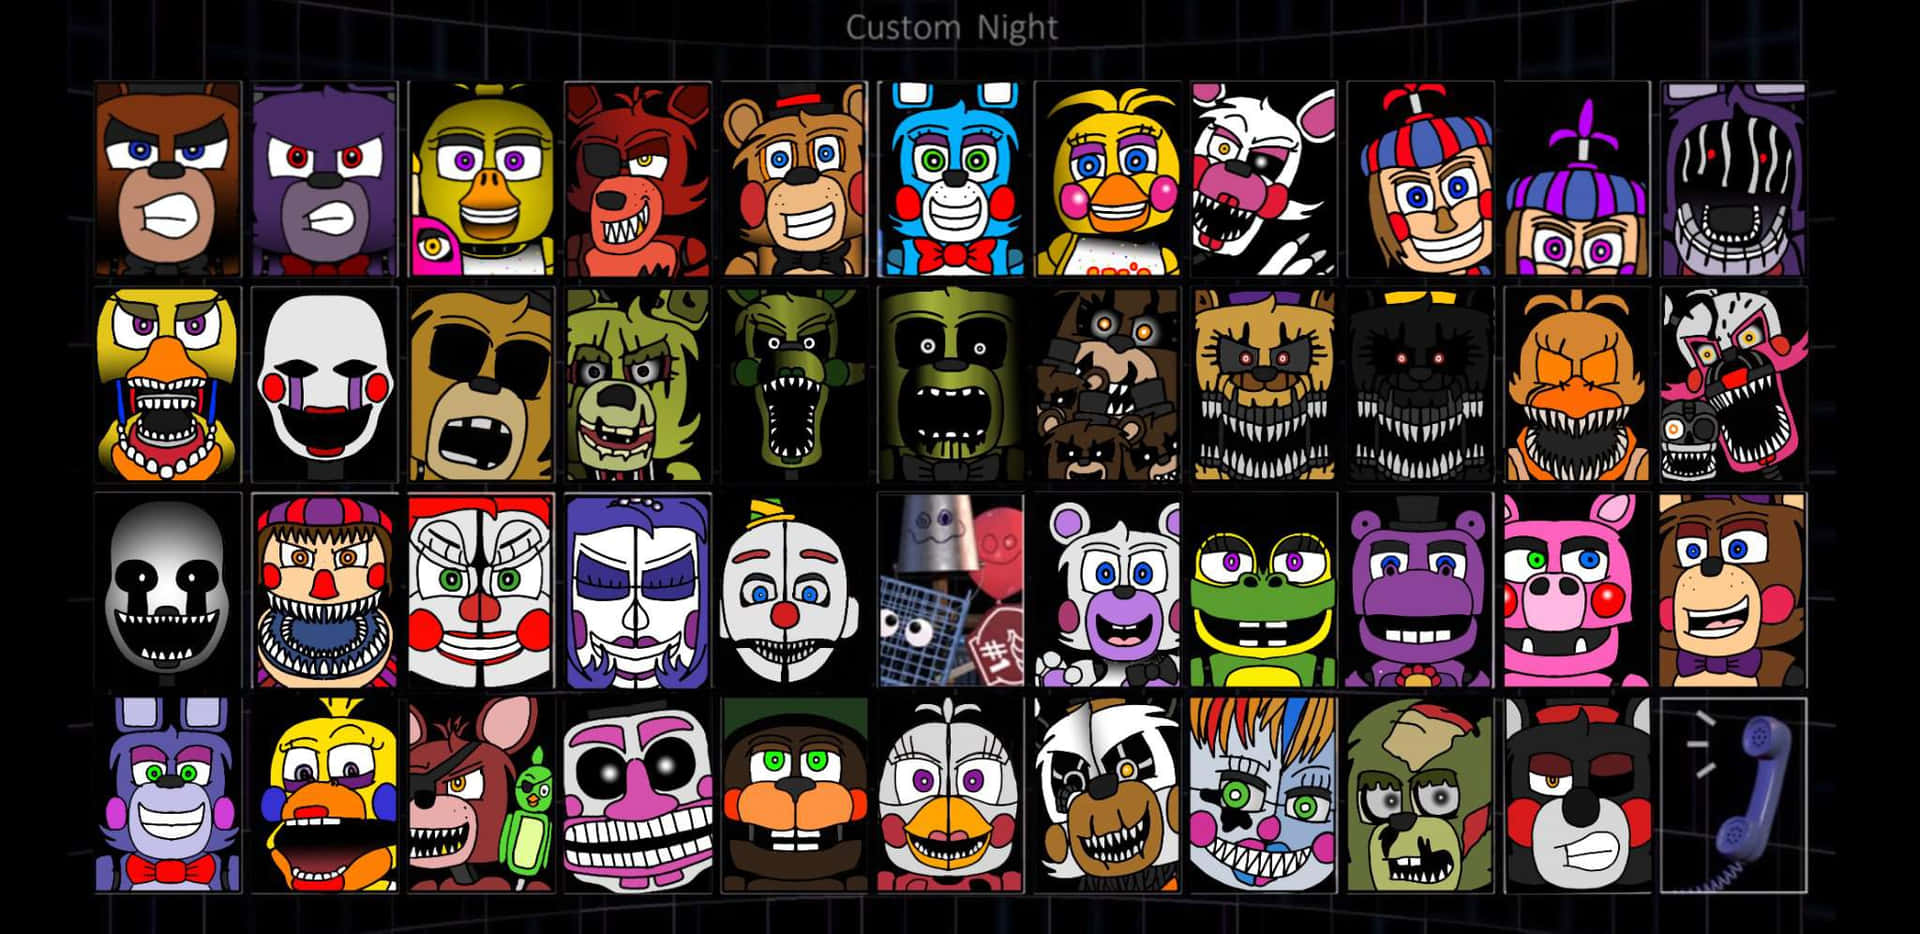 Ultimate Custom Night Game Characters Wallpaper